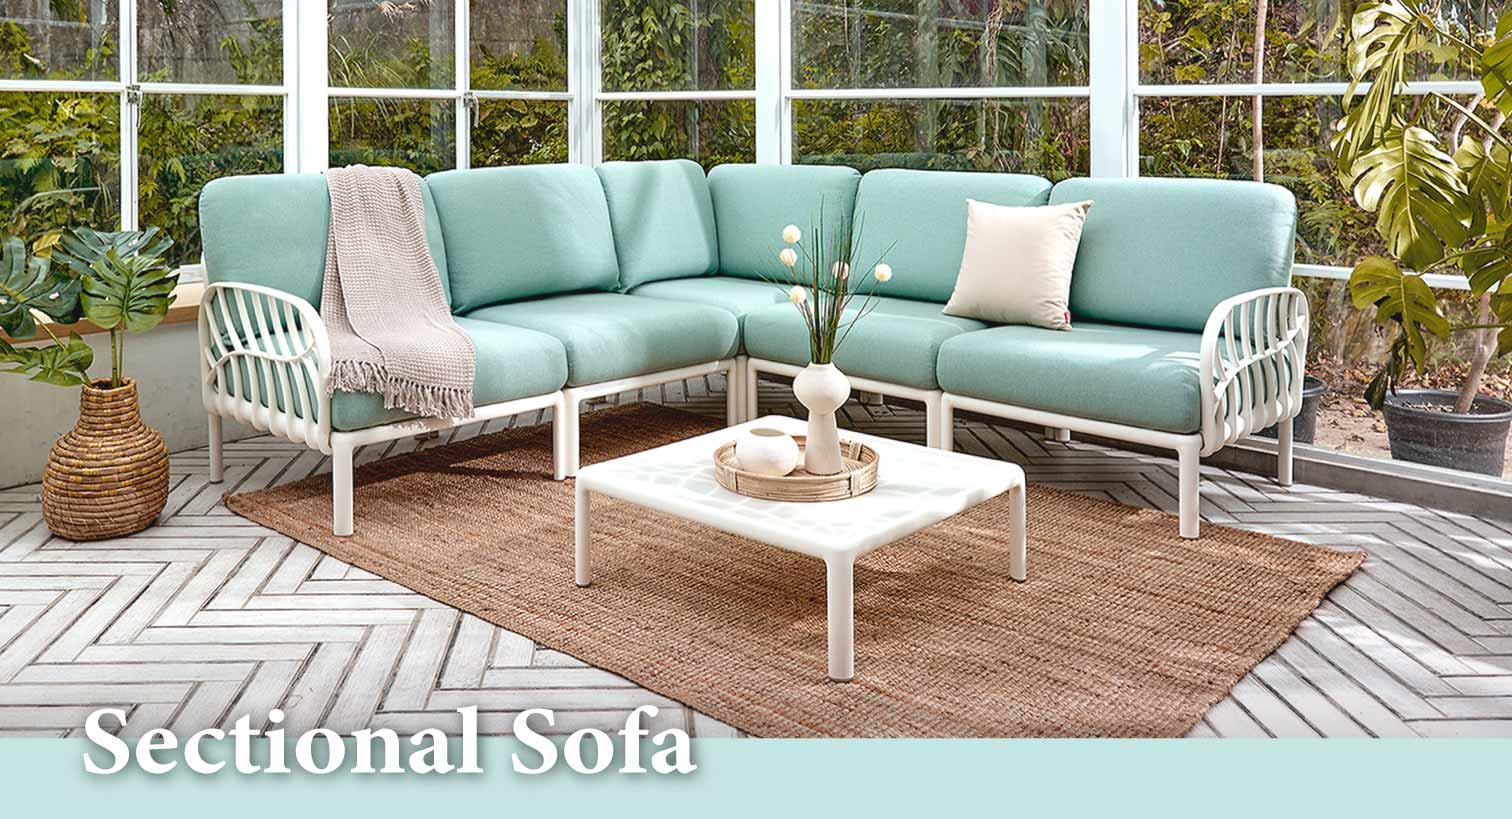 20201224_網站架構調整_1512內部_07 Modern Outdoor Sectional Furniture | Patio Sofa - Lagoon